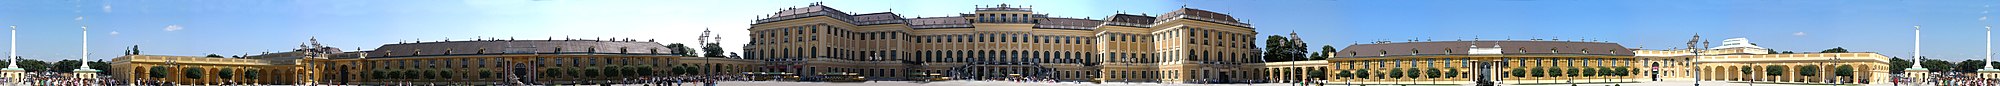 Panorama ulaznog dvorišta dvorca Schönbrunn